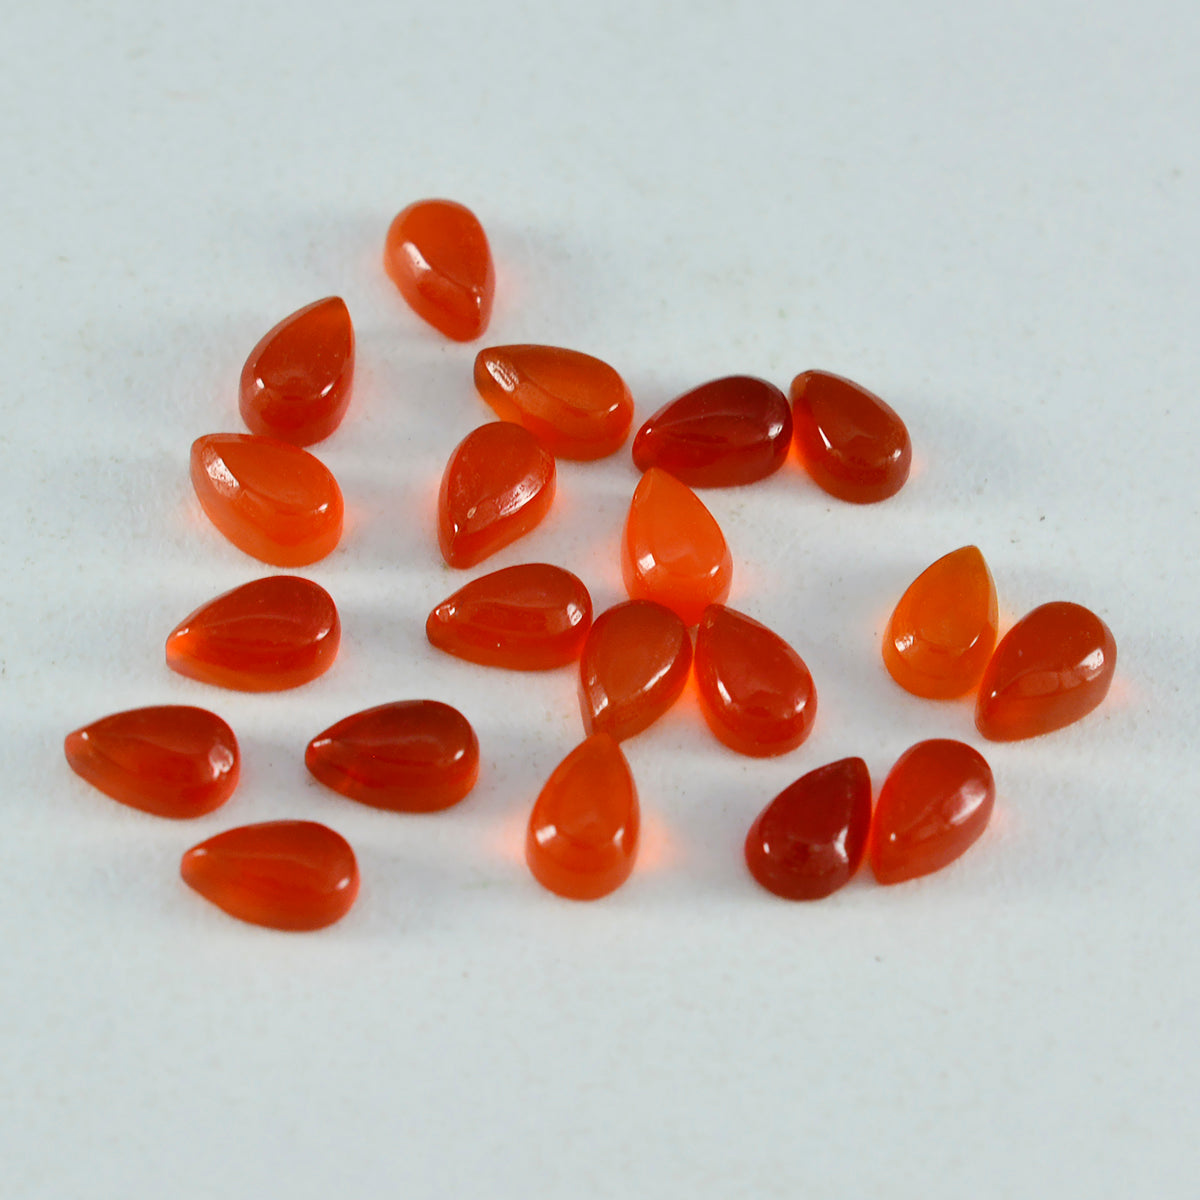 Riyogems 1 pieza cabujón de ónix rojo 3x5 mm forma de pera gemas sueltas de calidad atractiva